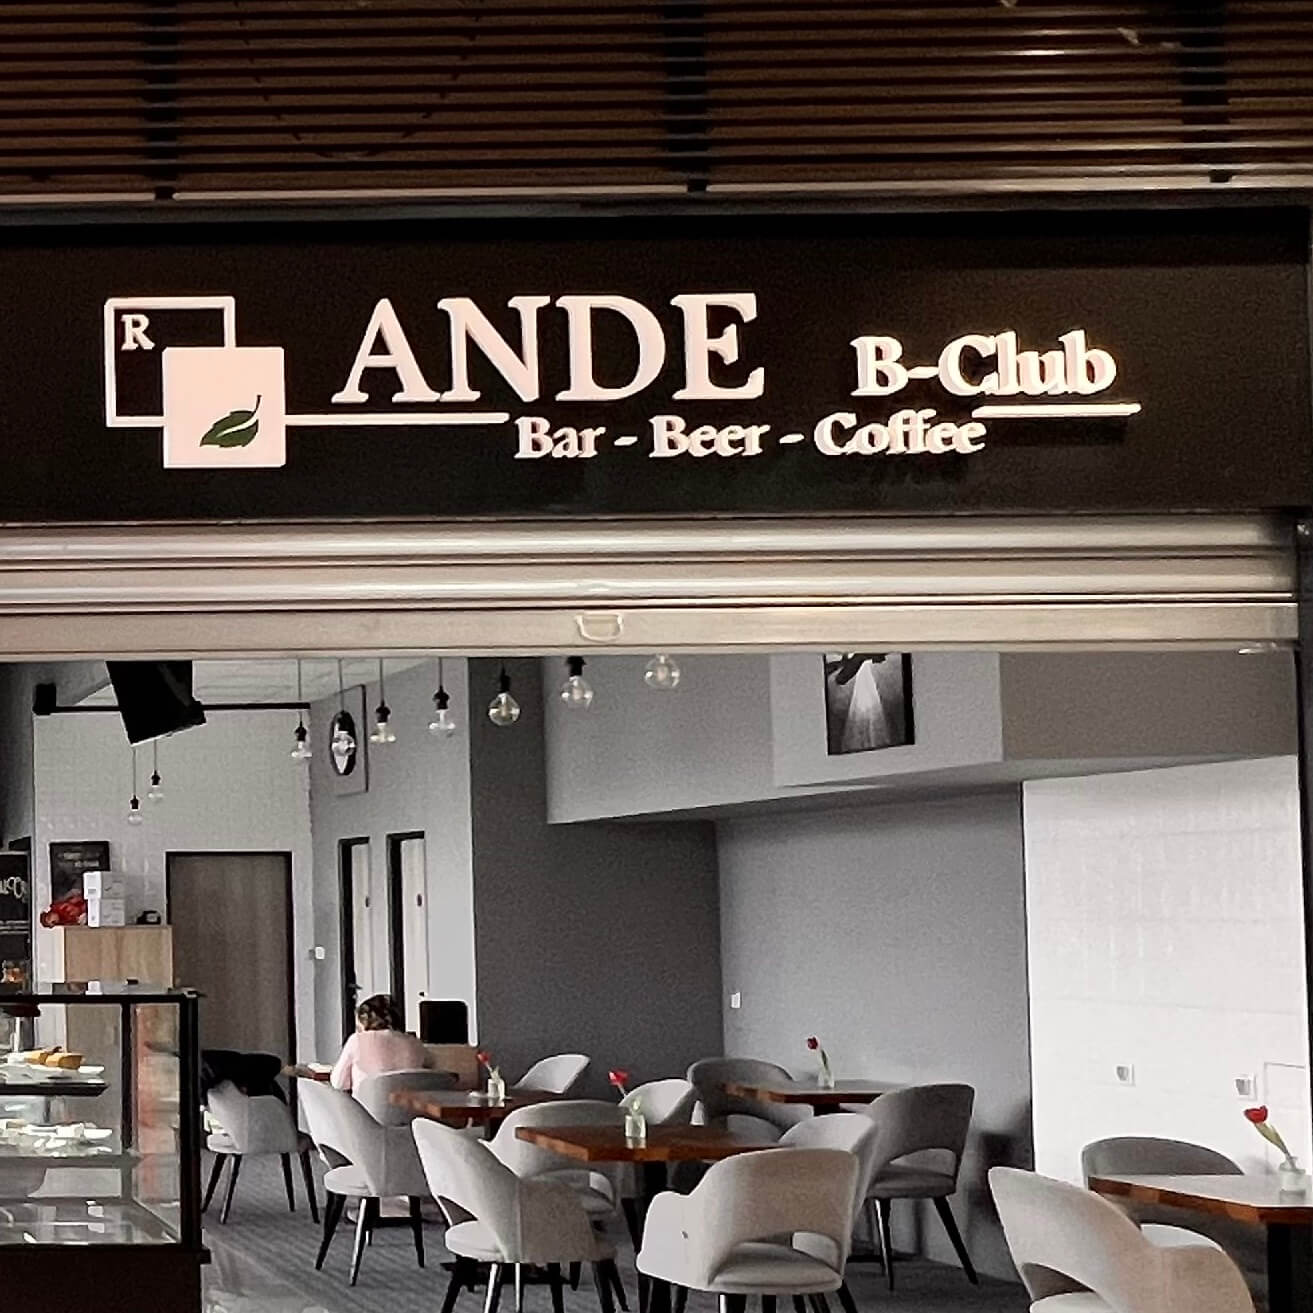 R – ANDE B – club